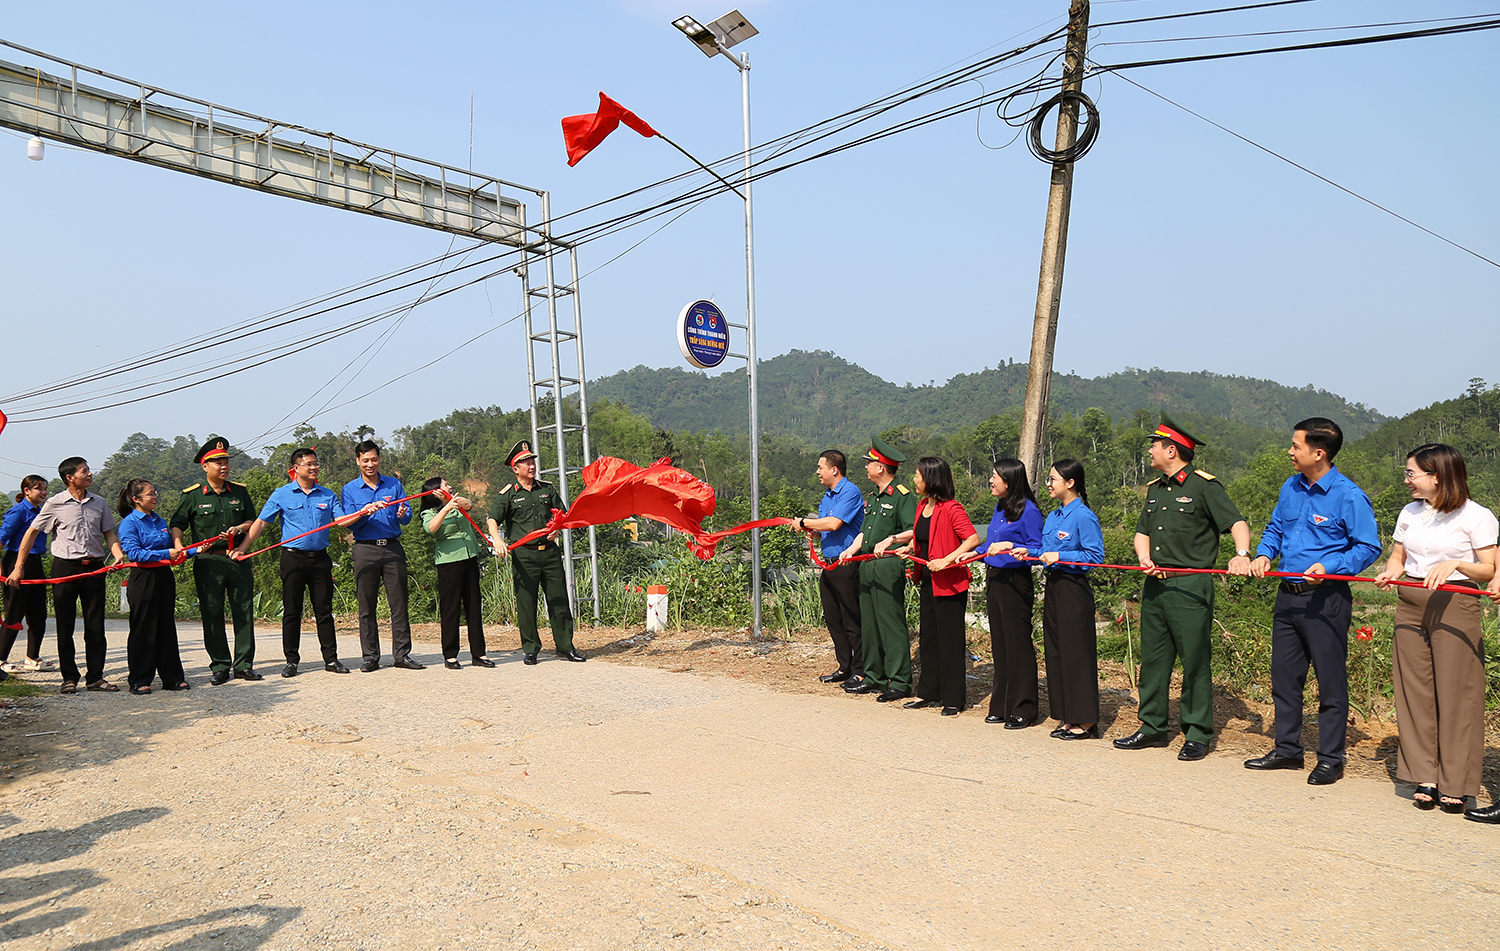 Các đại biểu kéo băng khánh thành công trình thanh niên Thắp sáng đường quê tại hai xã Tân Tú và Lục Bình, huyện Bạch Thông, tỉnh Bắc Kạn